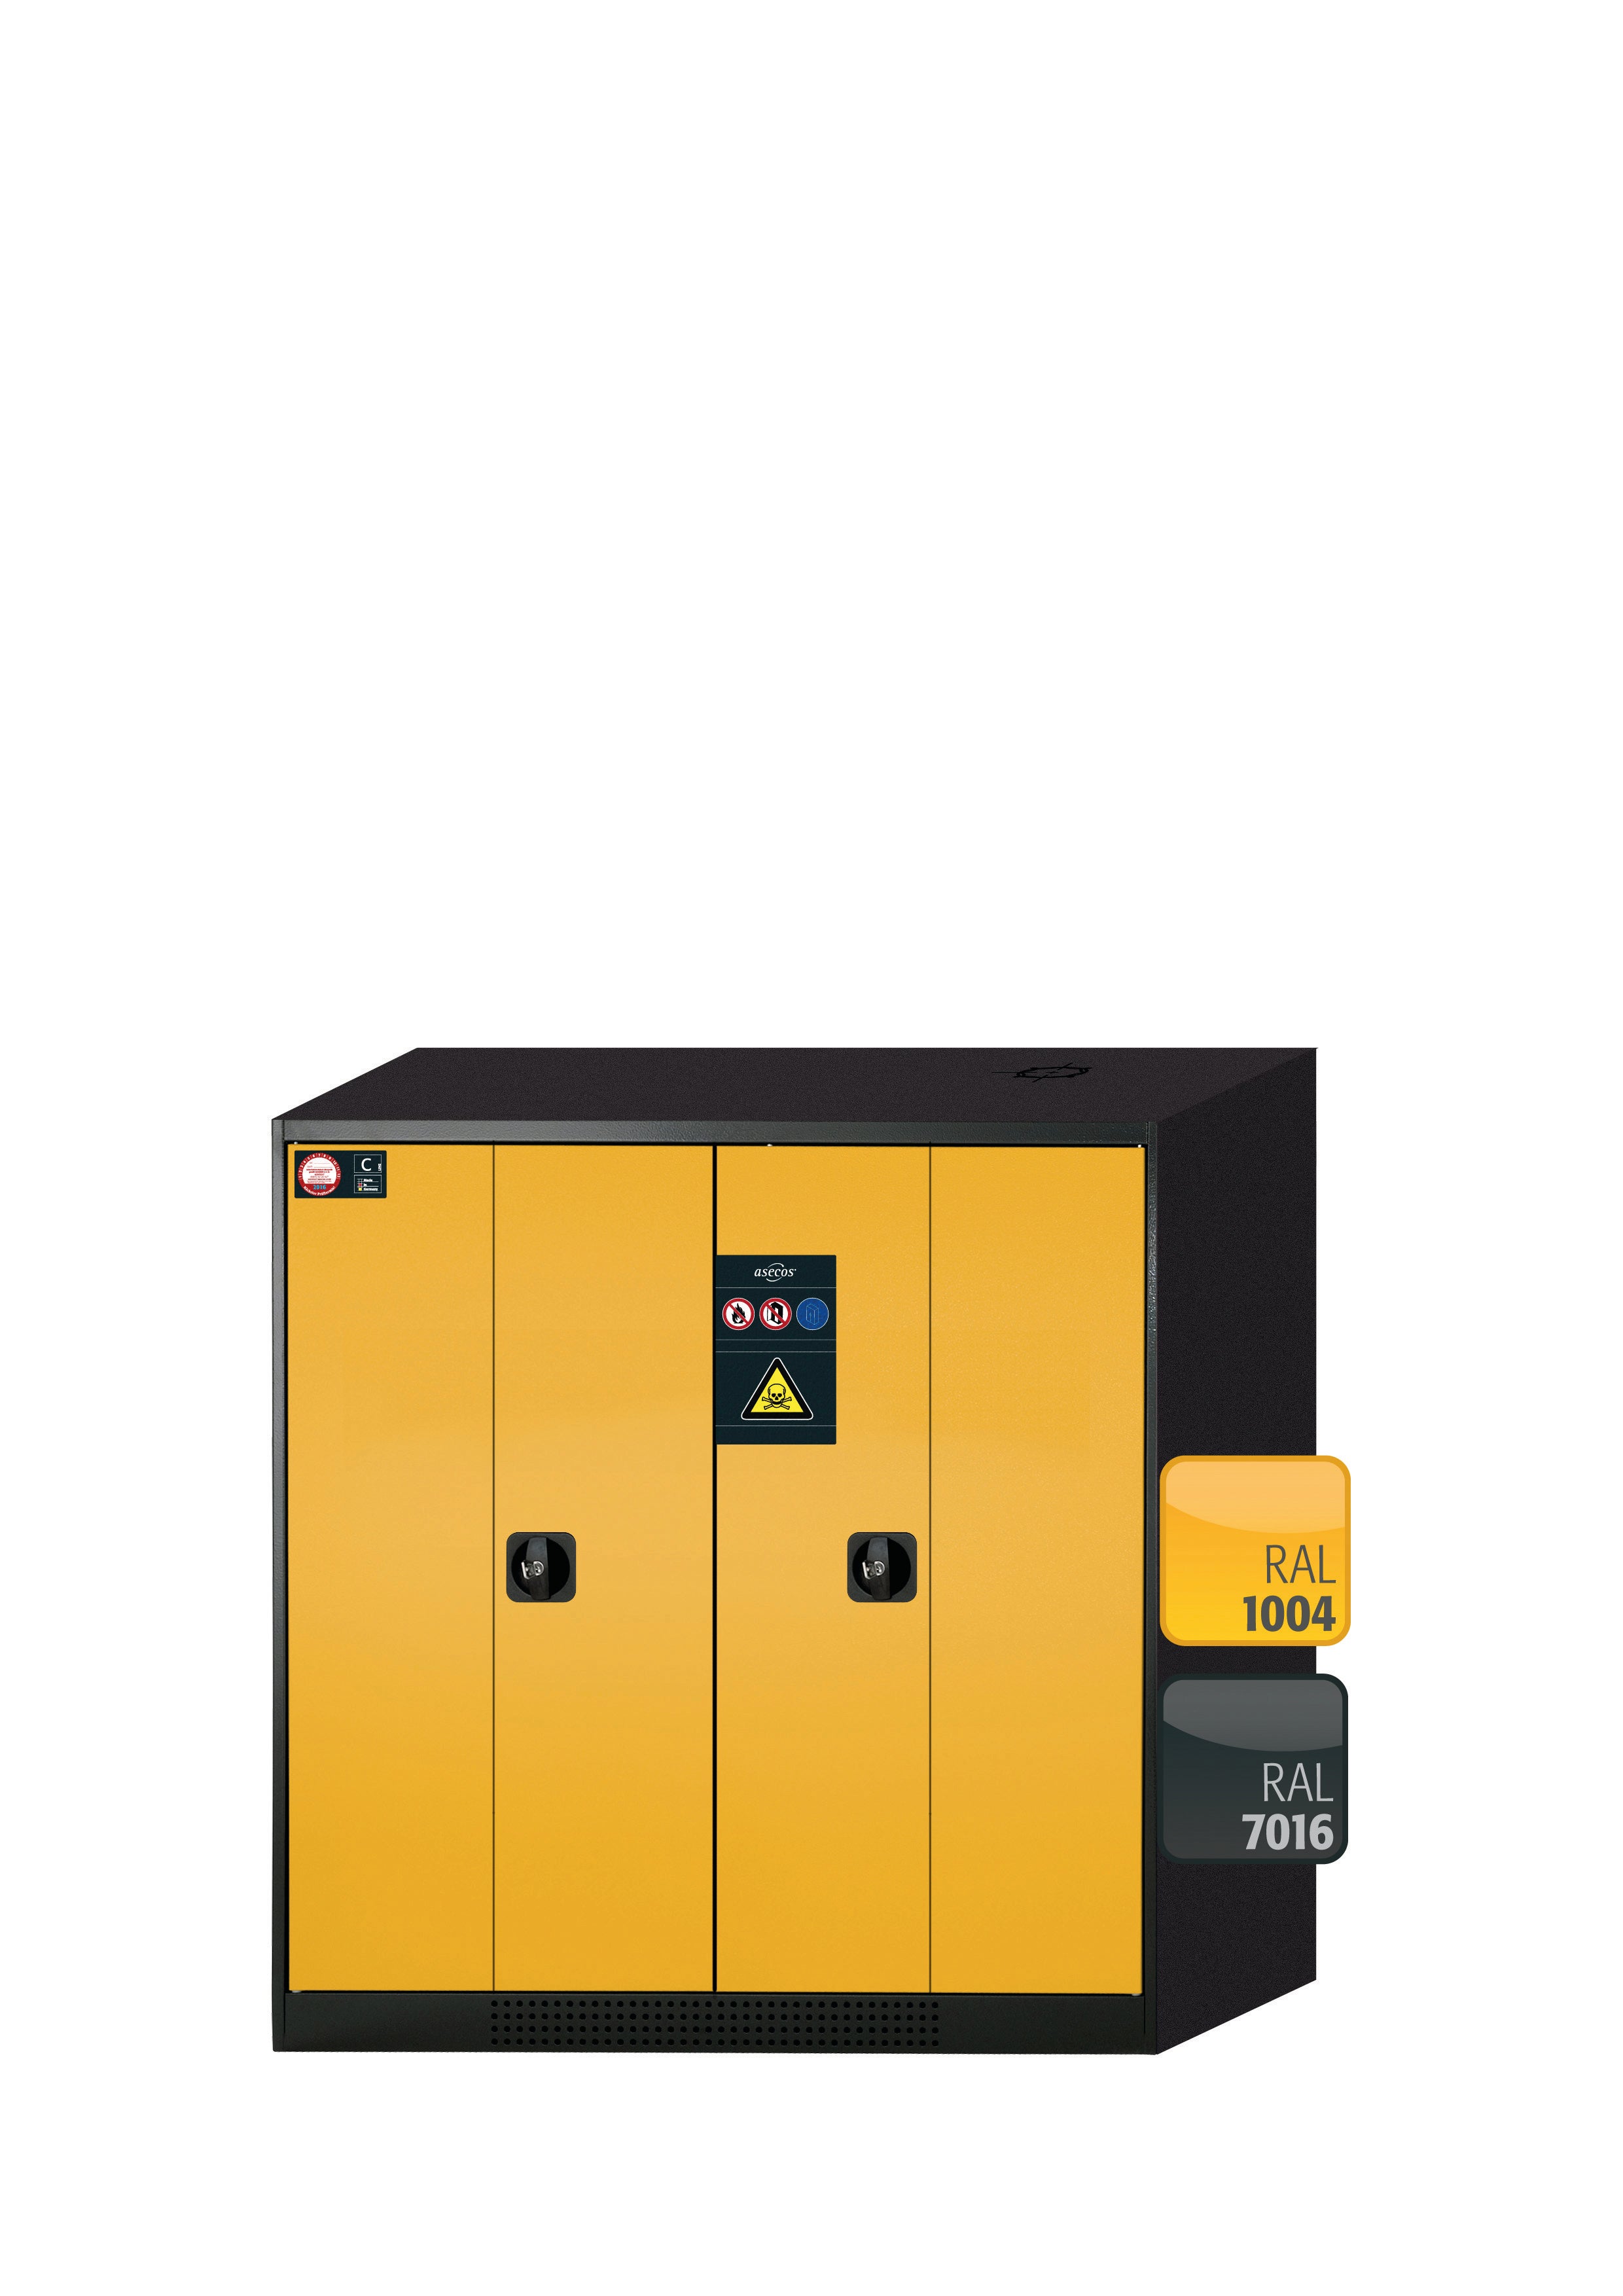 Armoire chimique CS-PHOENIX modèle CS.110.105.FD en jaune sécurité RAL 1004 avec 2x étagères coulissantes AbZ (tôle d'acier/polypropylène)